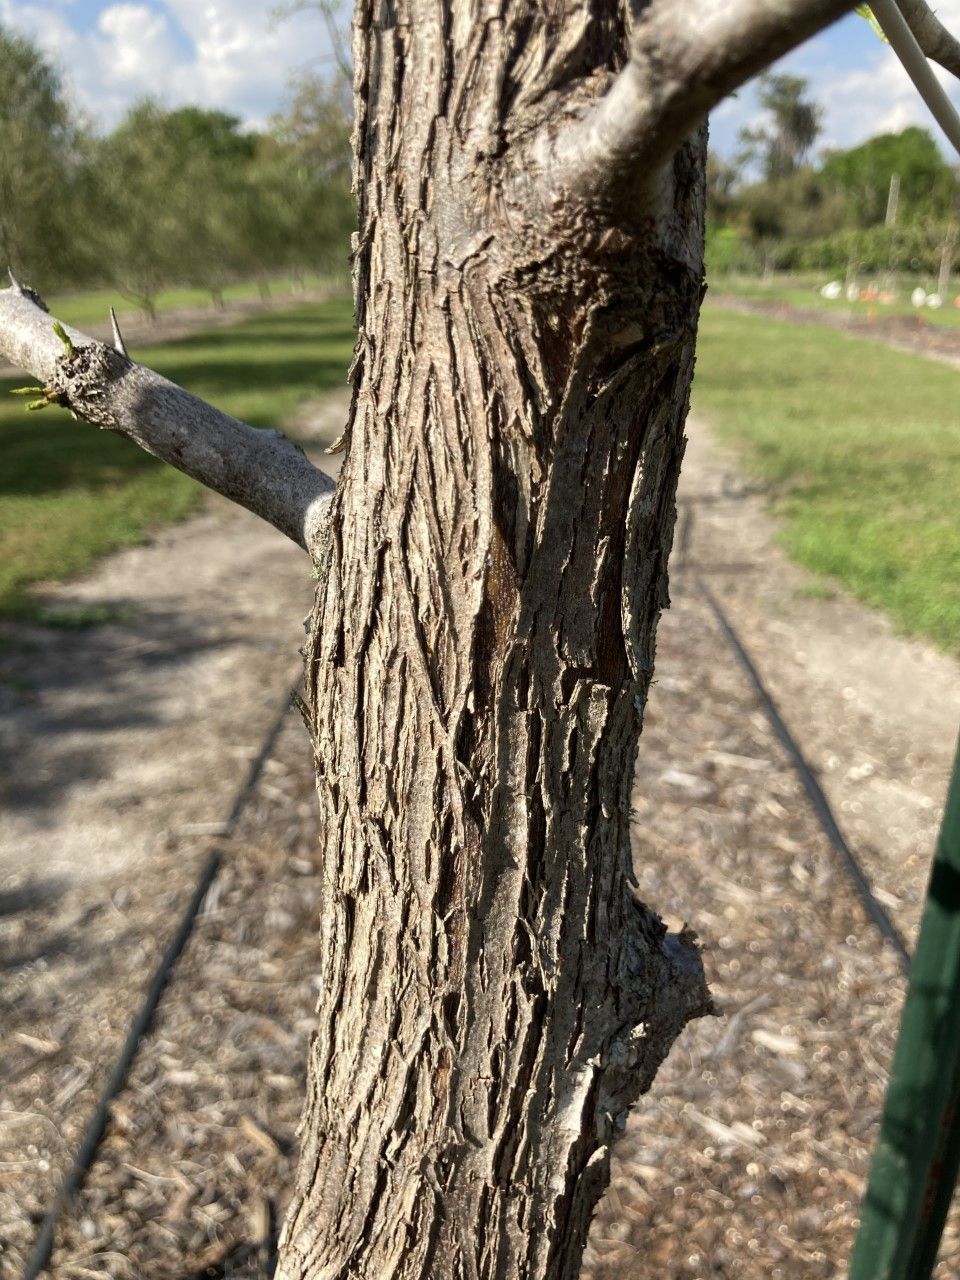 Bark pattern of 4-year-old ‘Sugar Cane’ variety, Gainesville, FL.